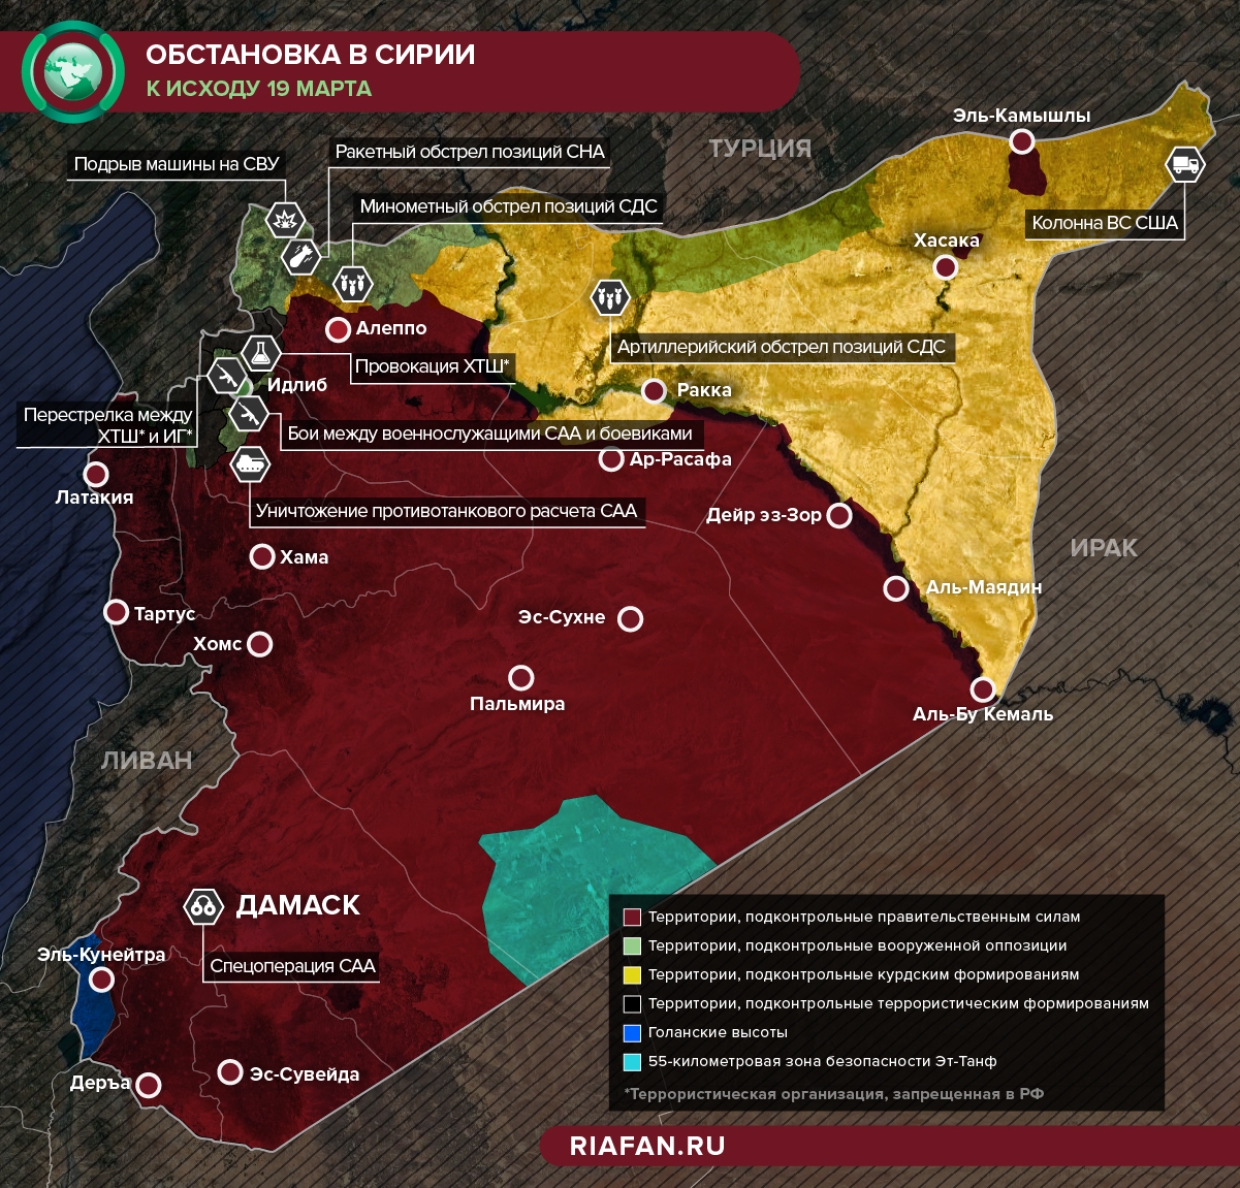 Провокация ХТШ в Идлибе и конвои ВС США — что произошло в Сирии 18-19 марта